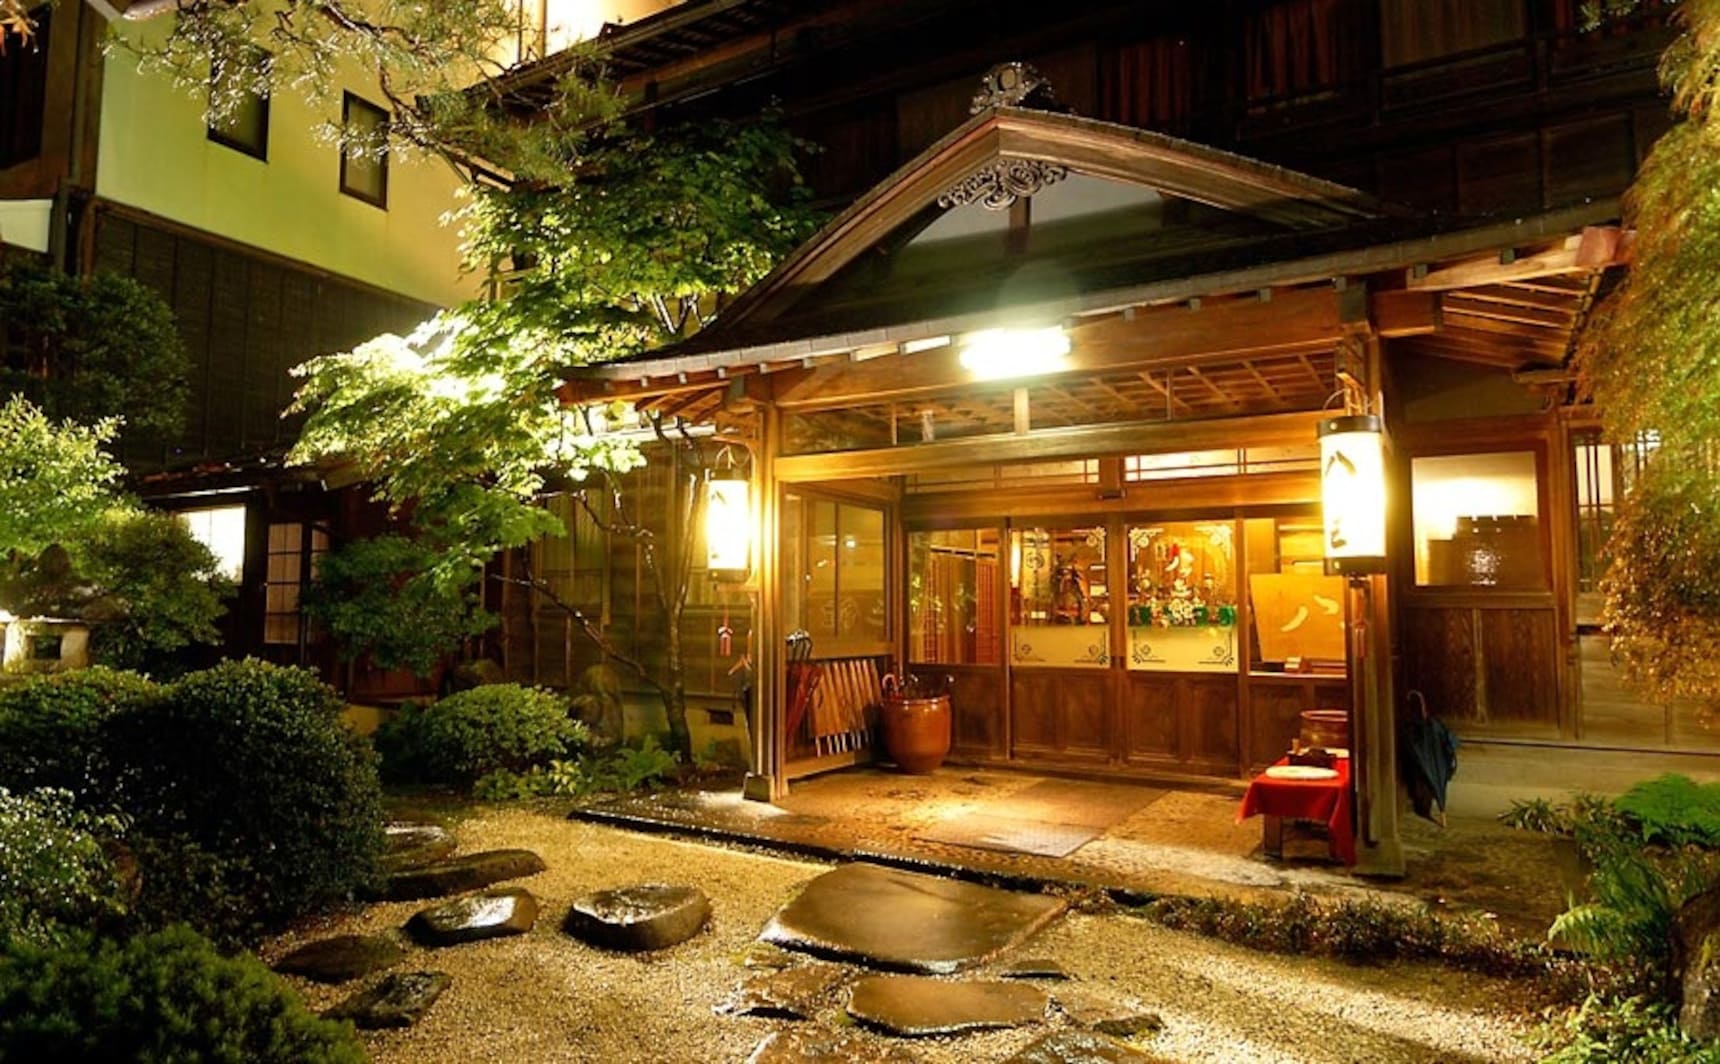 Top 10 Historical Hotels & 'Ryokan' Inns